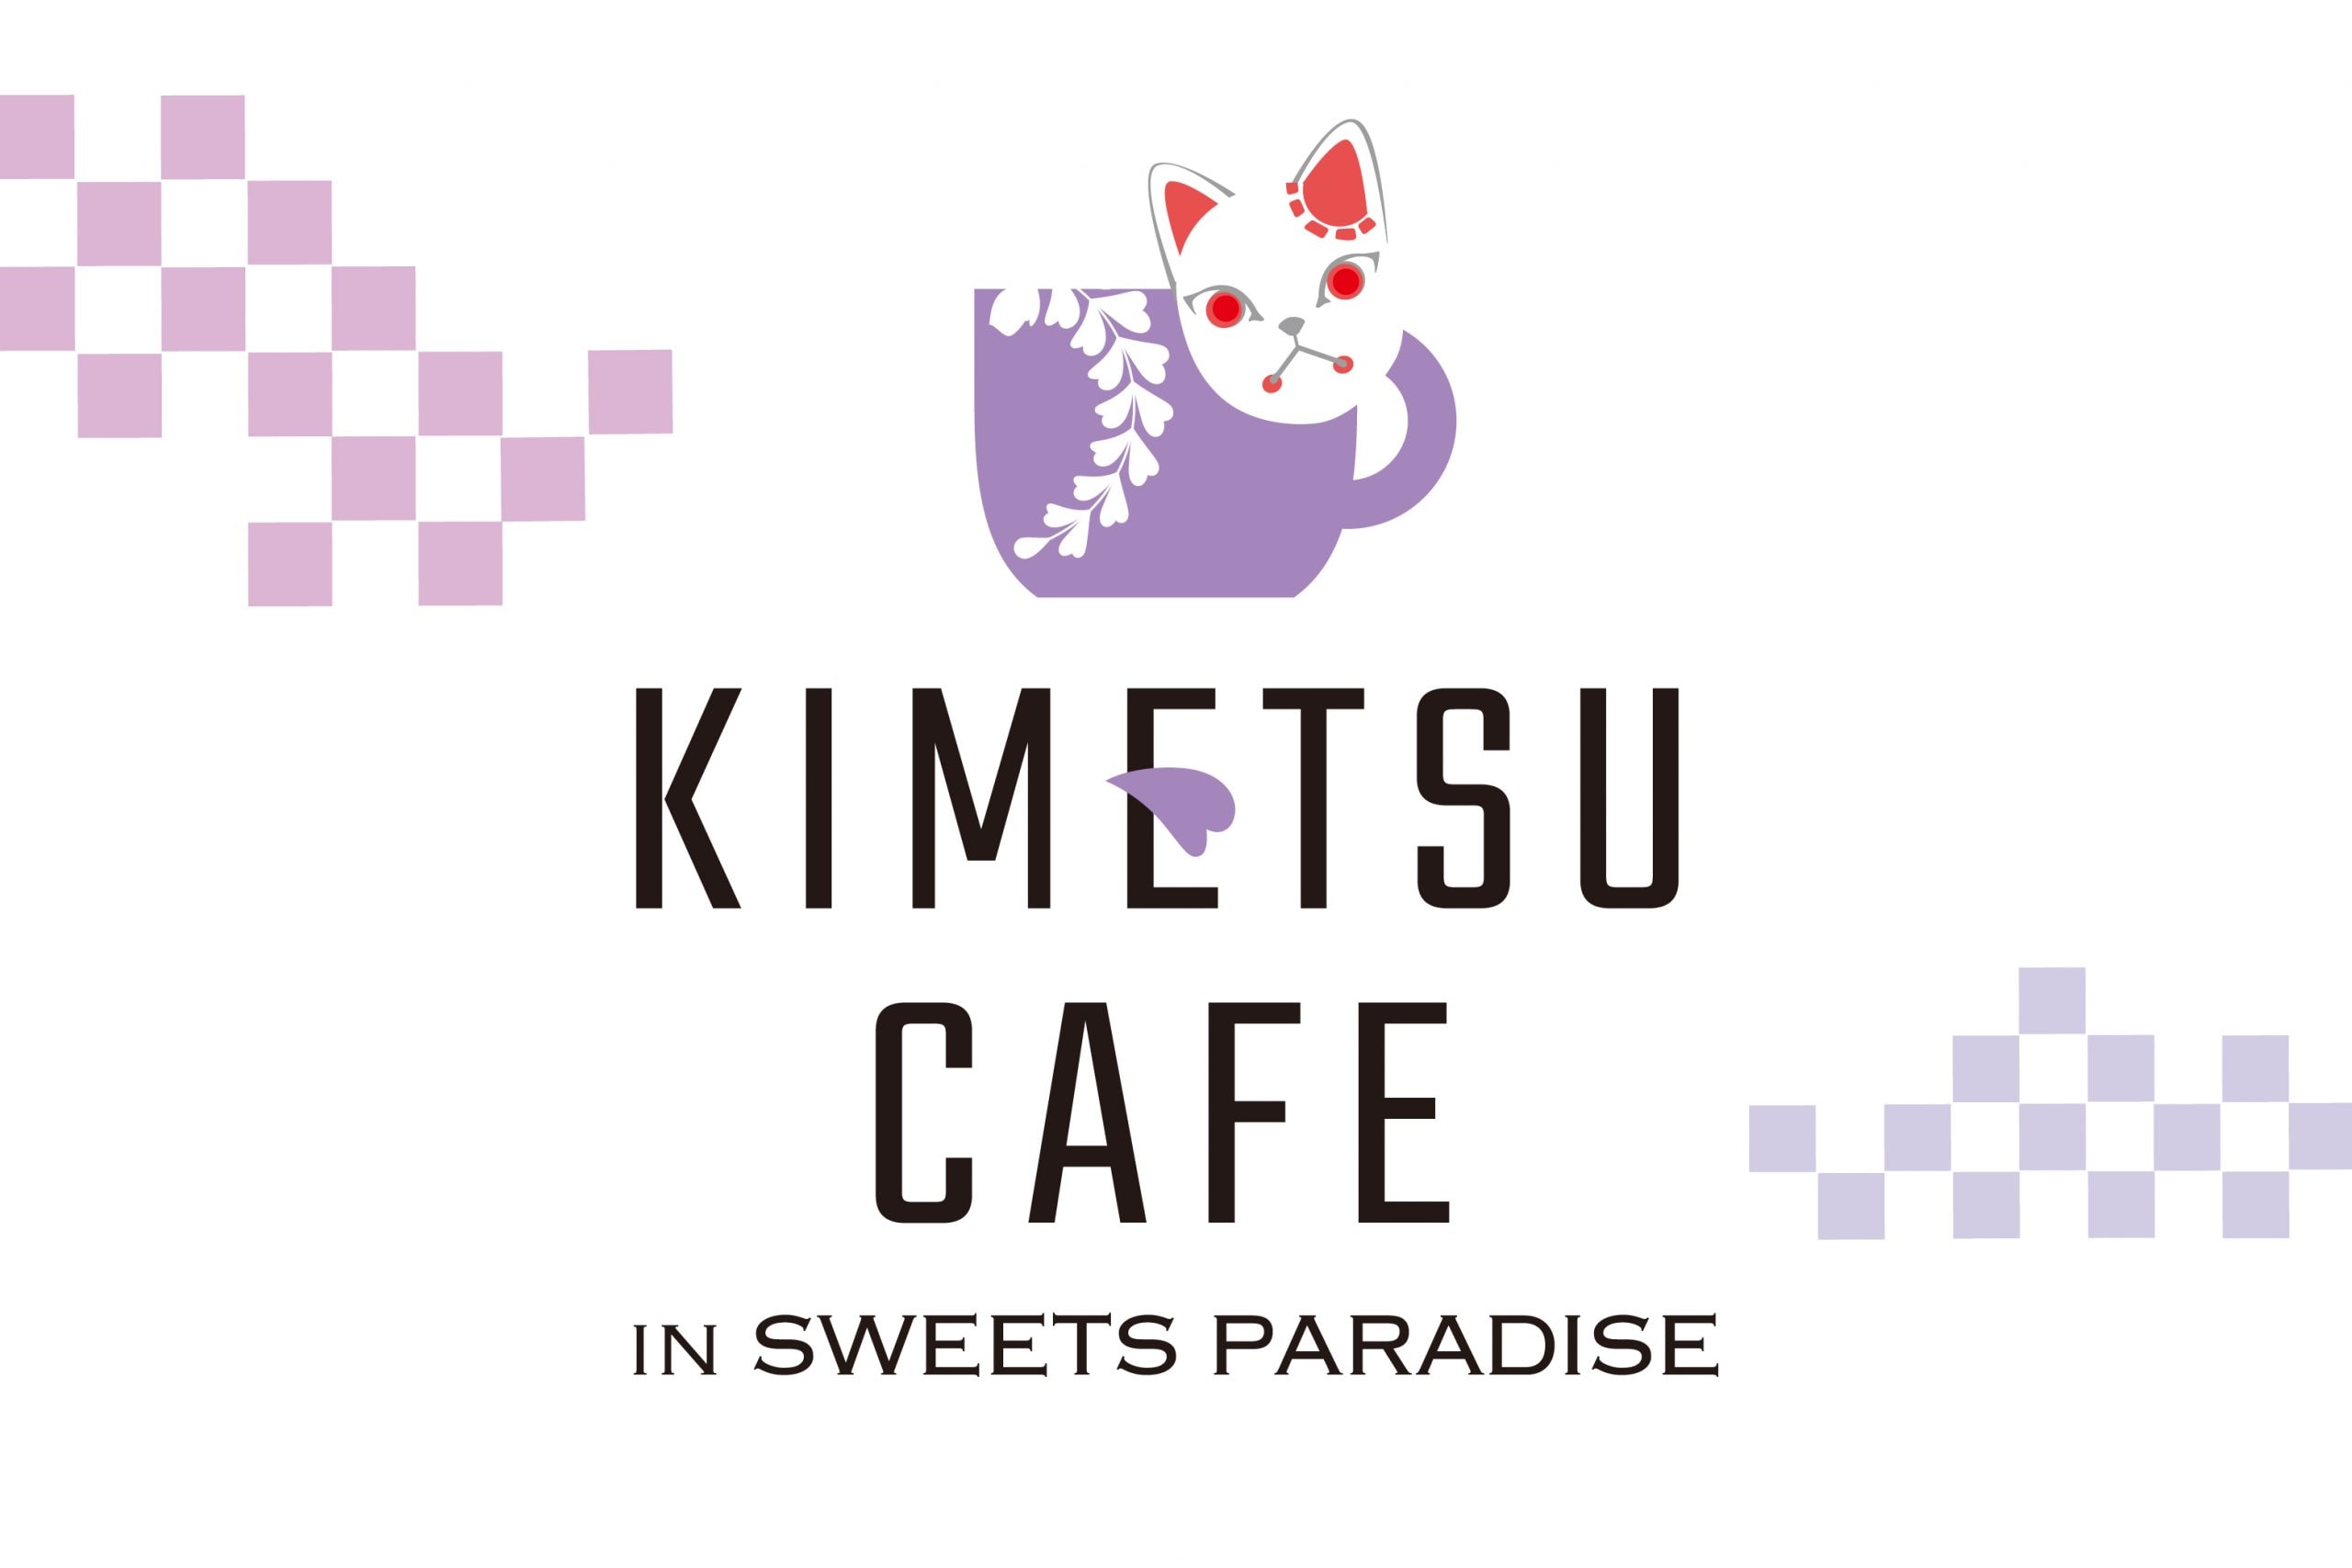 Kimetsu Cafe